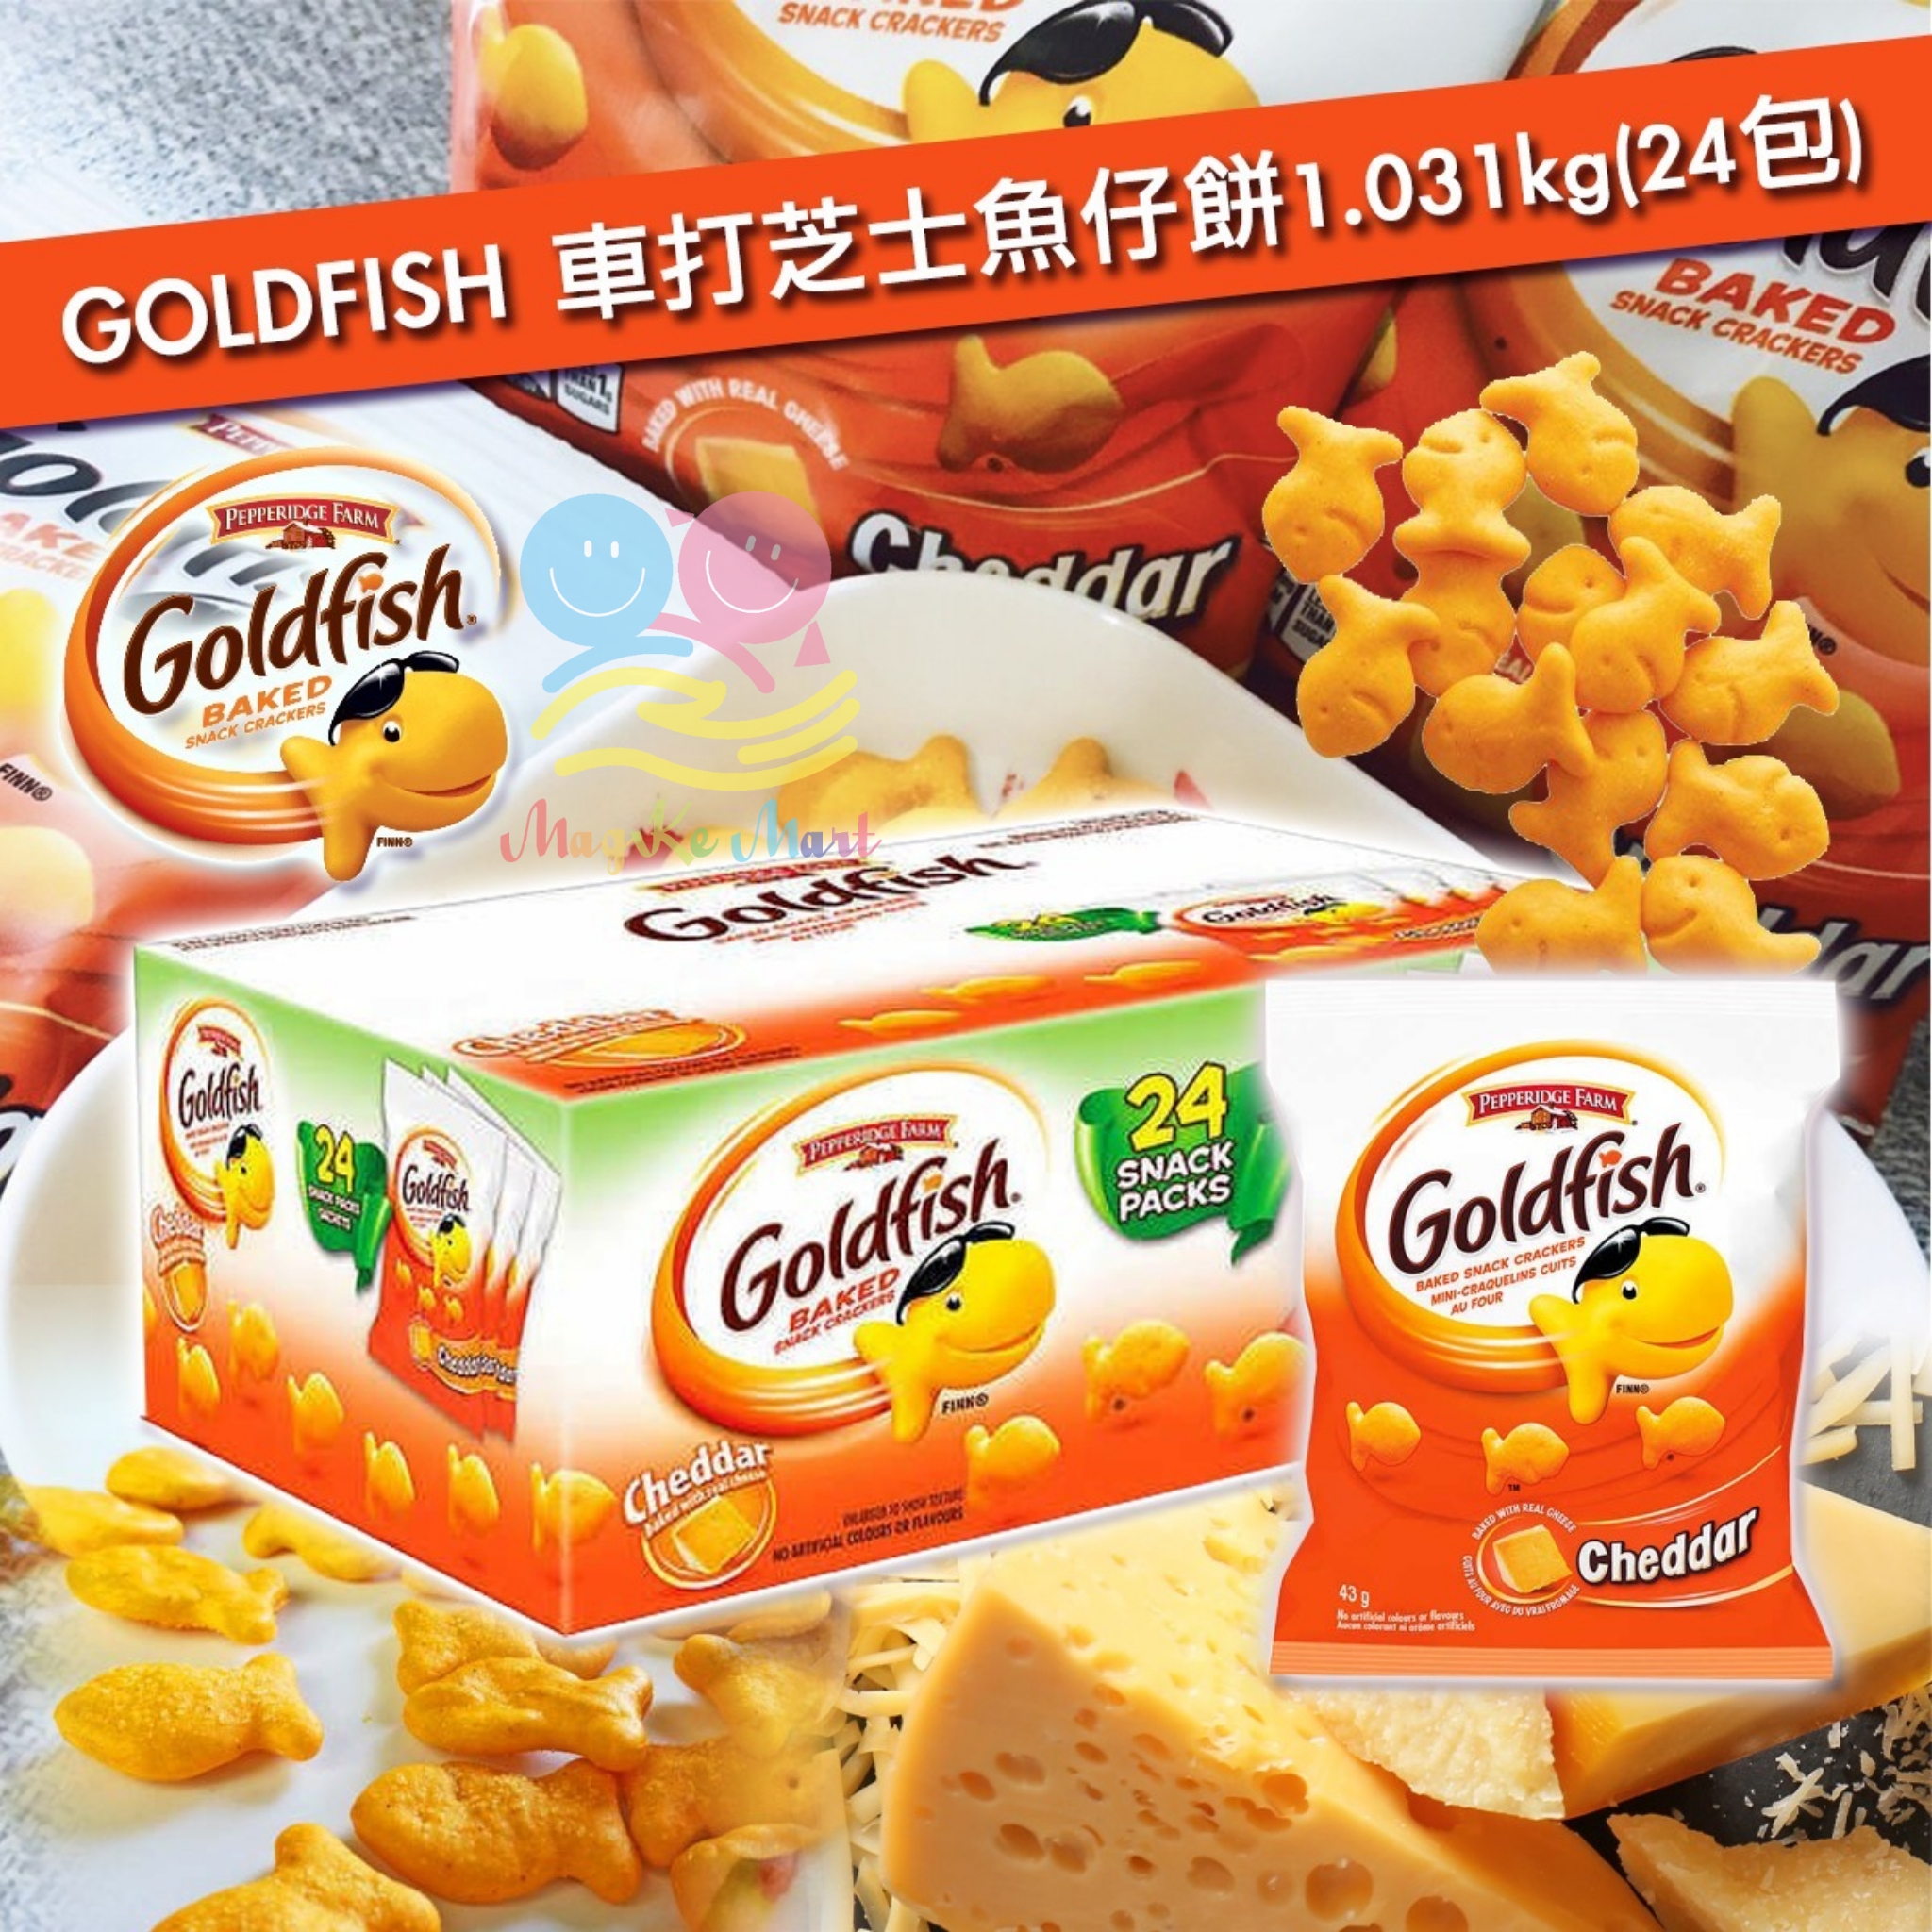 GOLDFISH 車打芝士魚仔餅1.031kg (1箱24包)